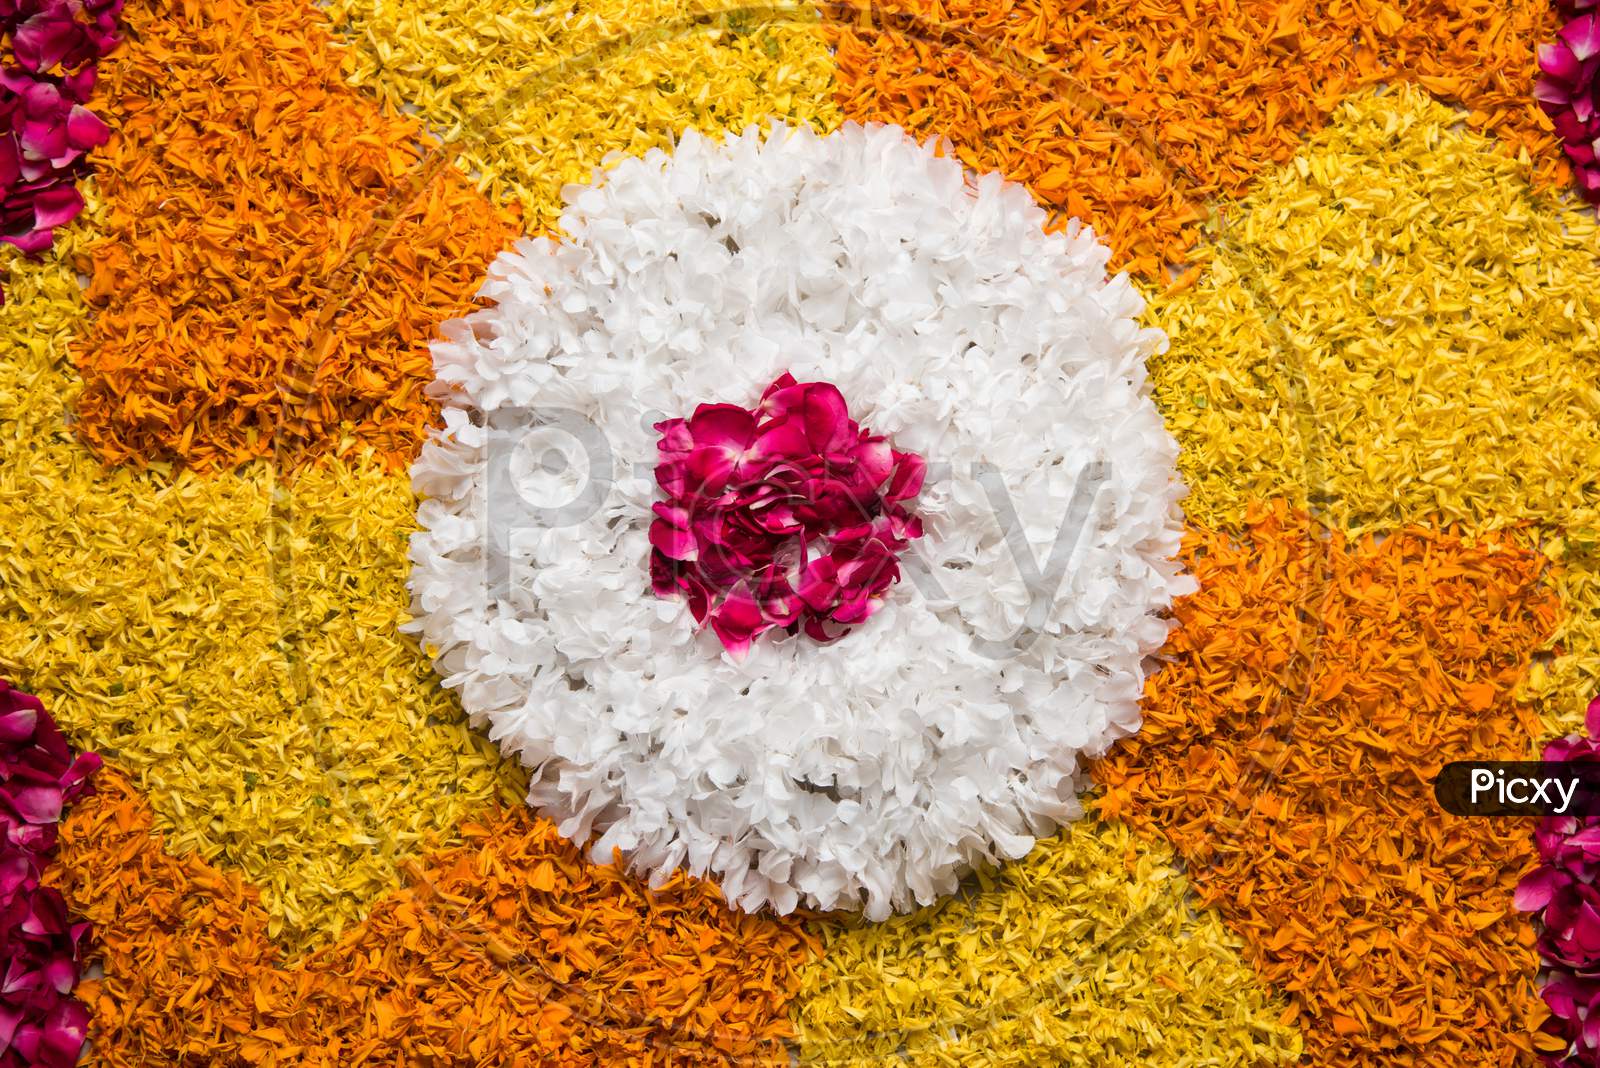 Flower rangoli for festival